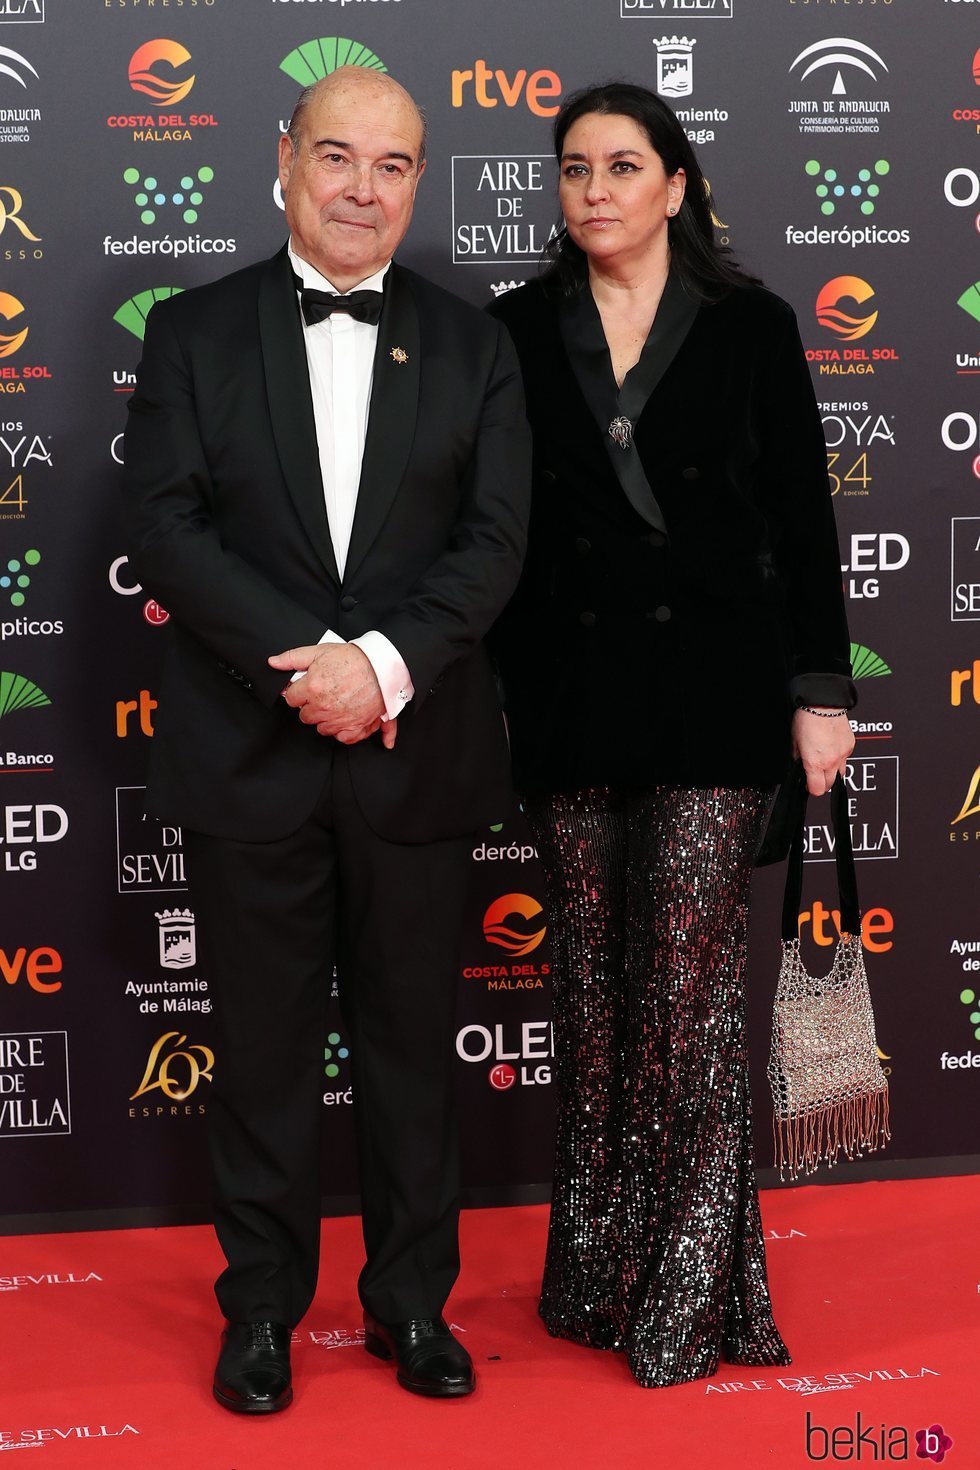 Antonio Resines y Ana Pérez Lorente en la alfombra roja de los Goya 2020